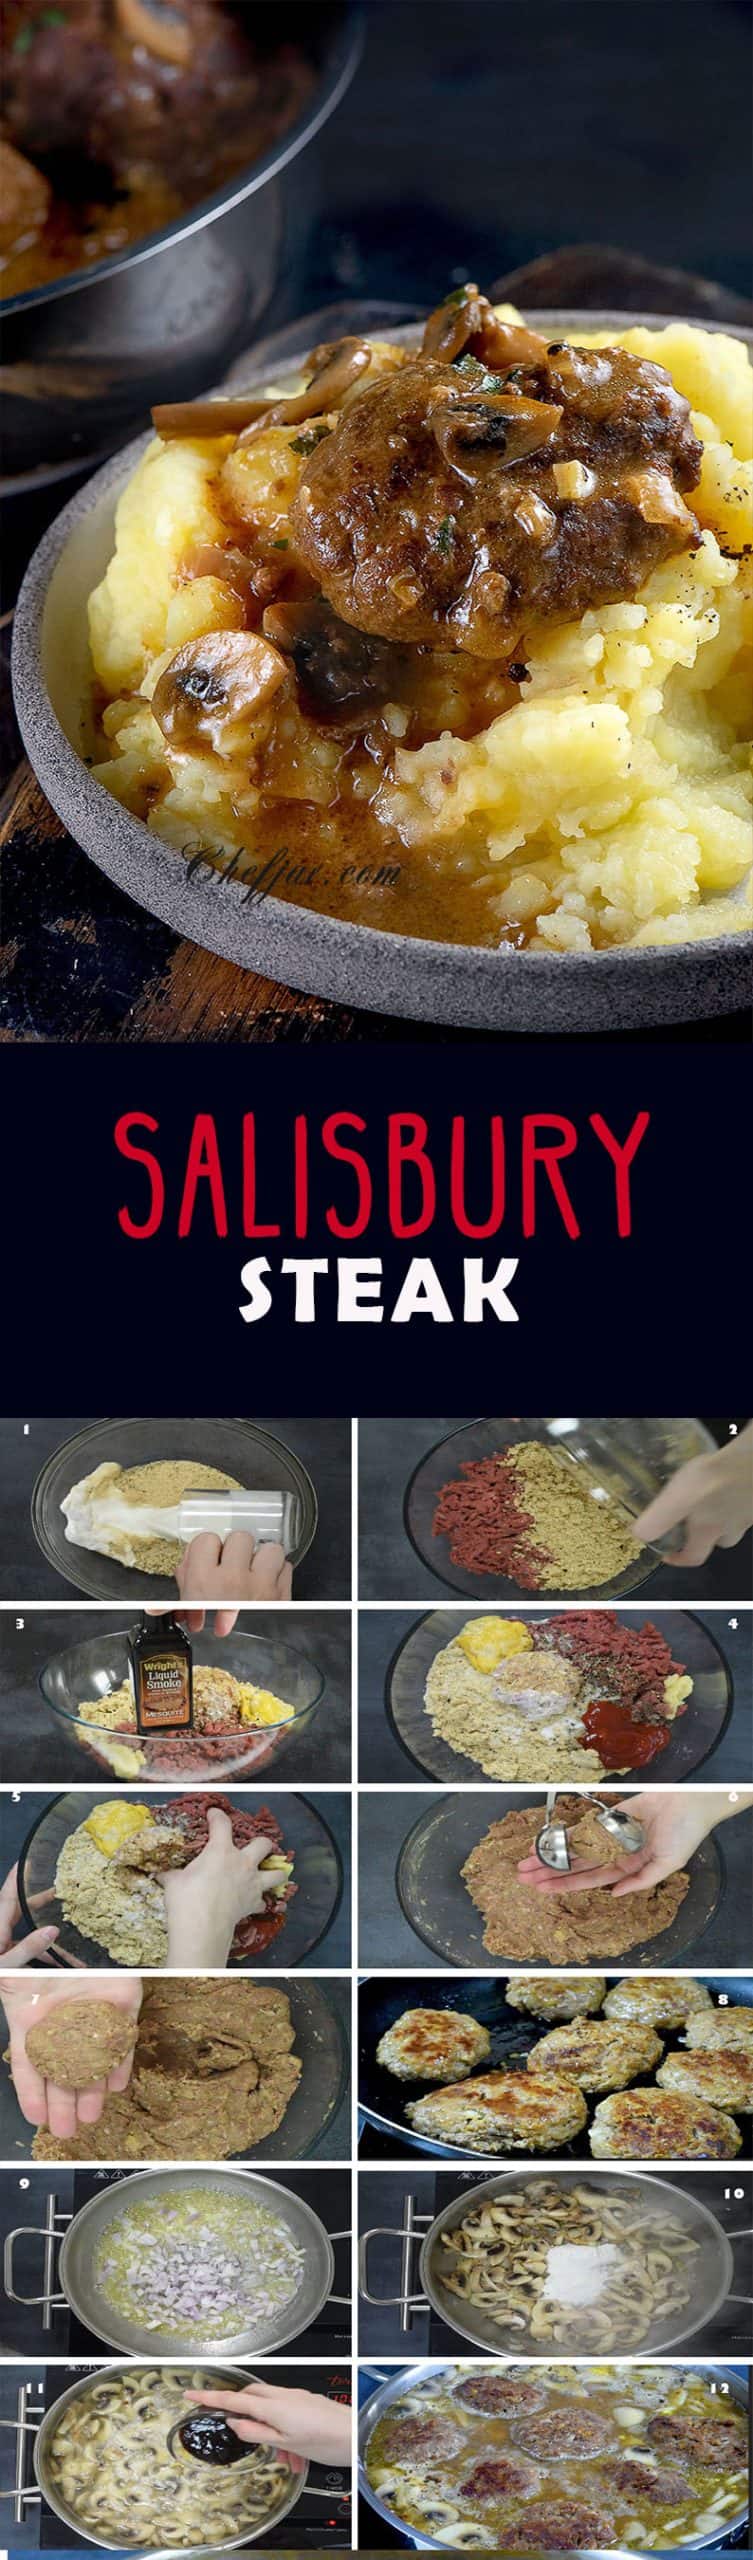 salisbury-steak